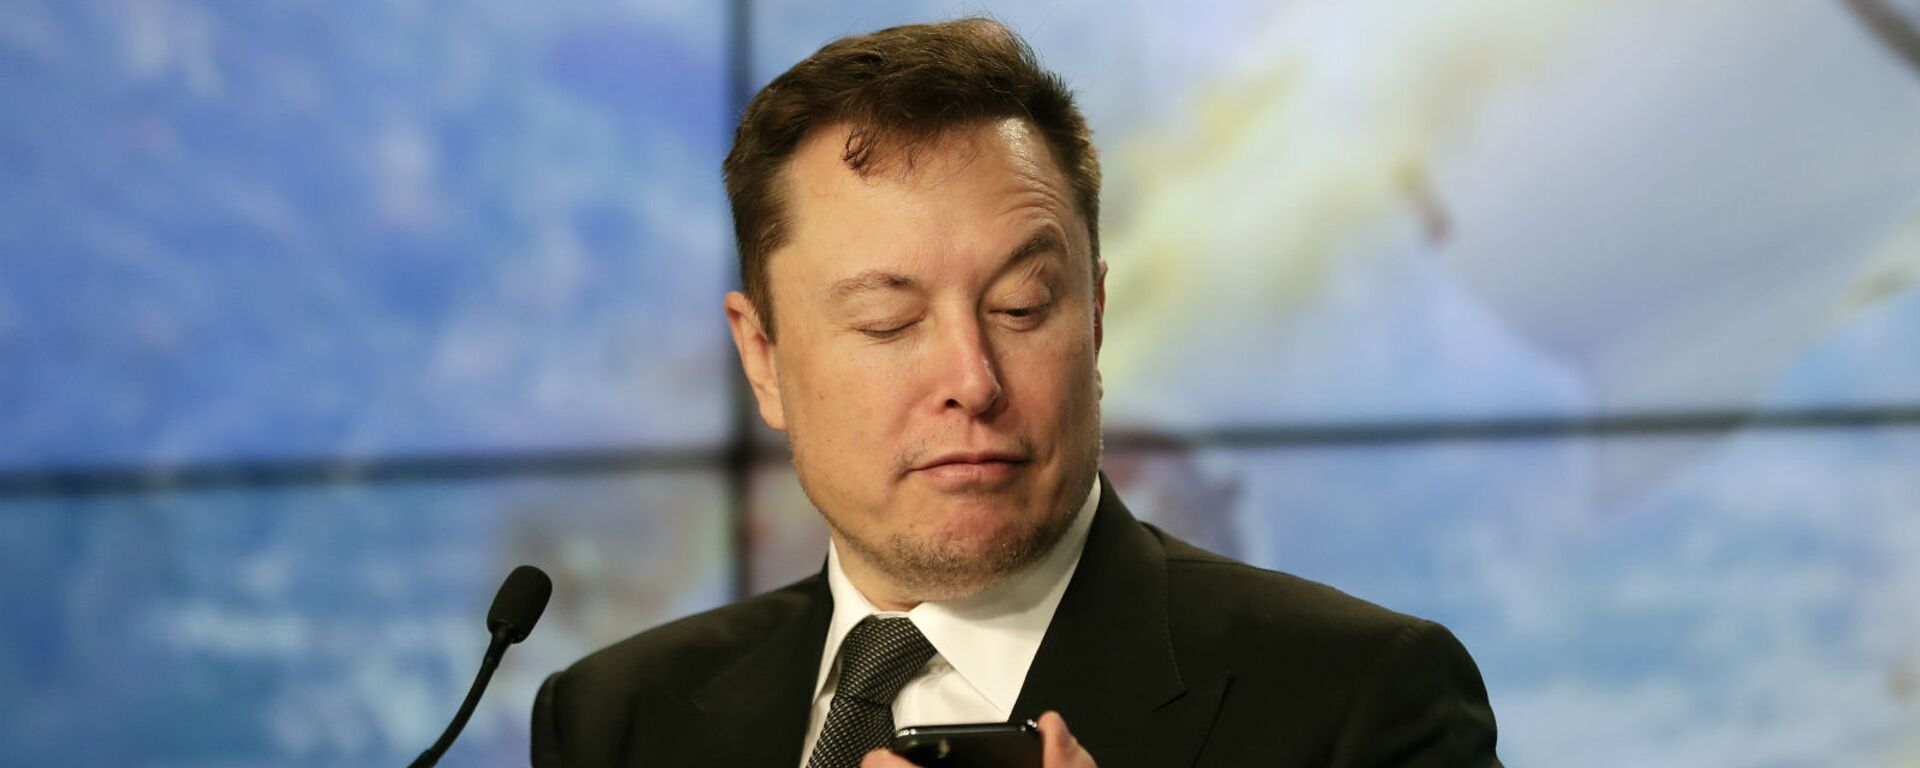 Основатель SpaceX Илон Маск шутит с журналистами, делая вид, что ищет ответ на вопрос по мобильному телефону во время пресс-конференции после испытательного полета ракеты Falcon 9 SpaceX (19 января 2020). Флорида - Sputnik Грузия, 1920, 02.12.2020